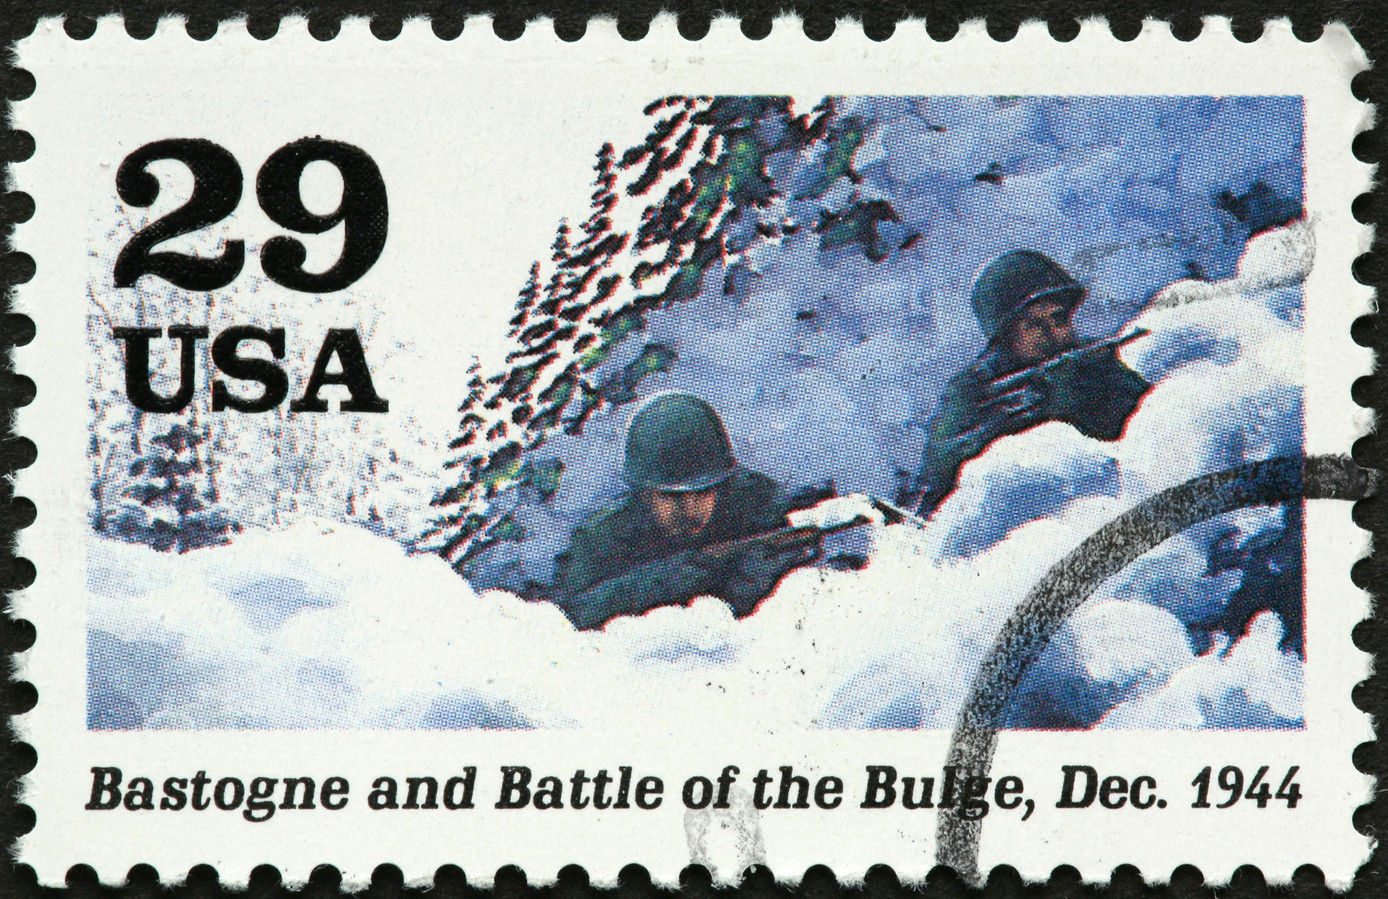 Amerikaanse postzegels uit de Tweede Wereldoorlog beeldden bezette gebieden af